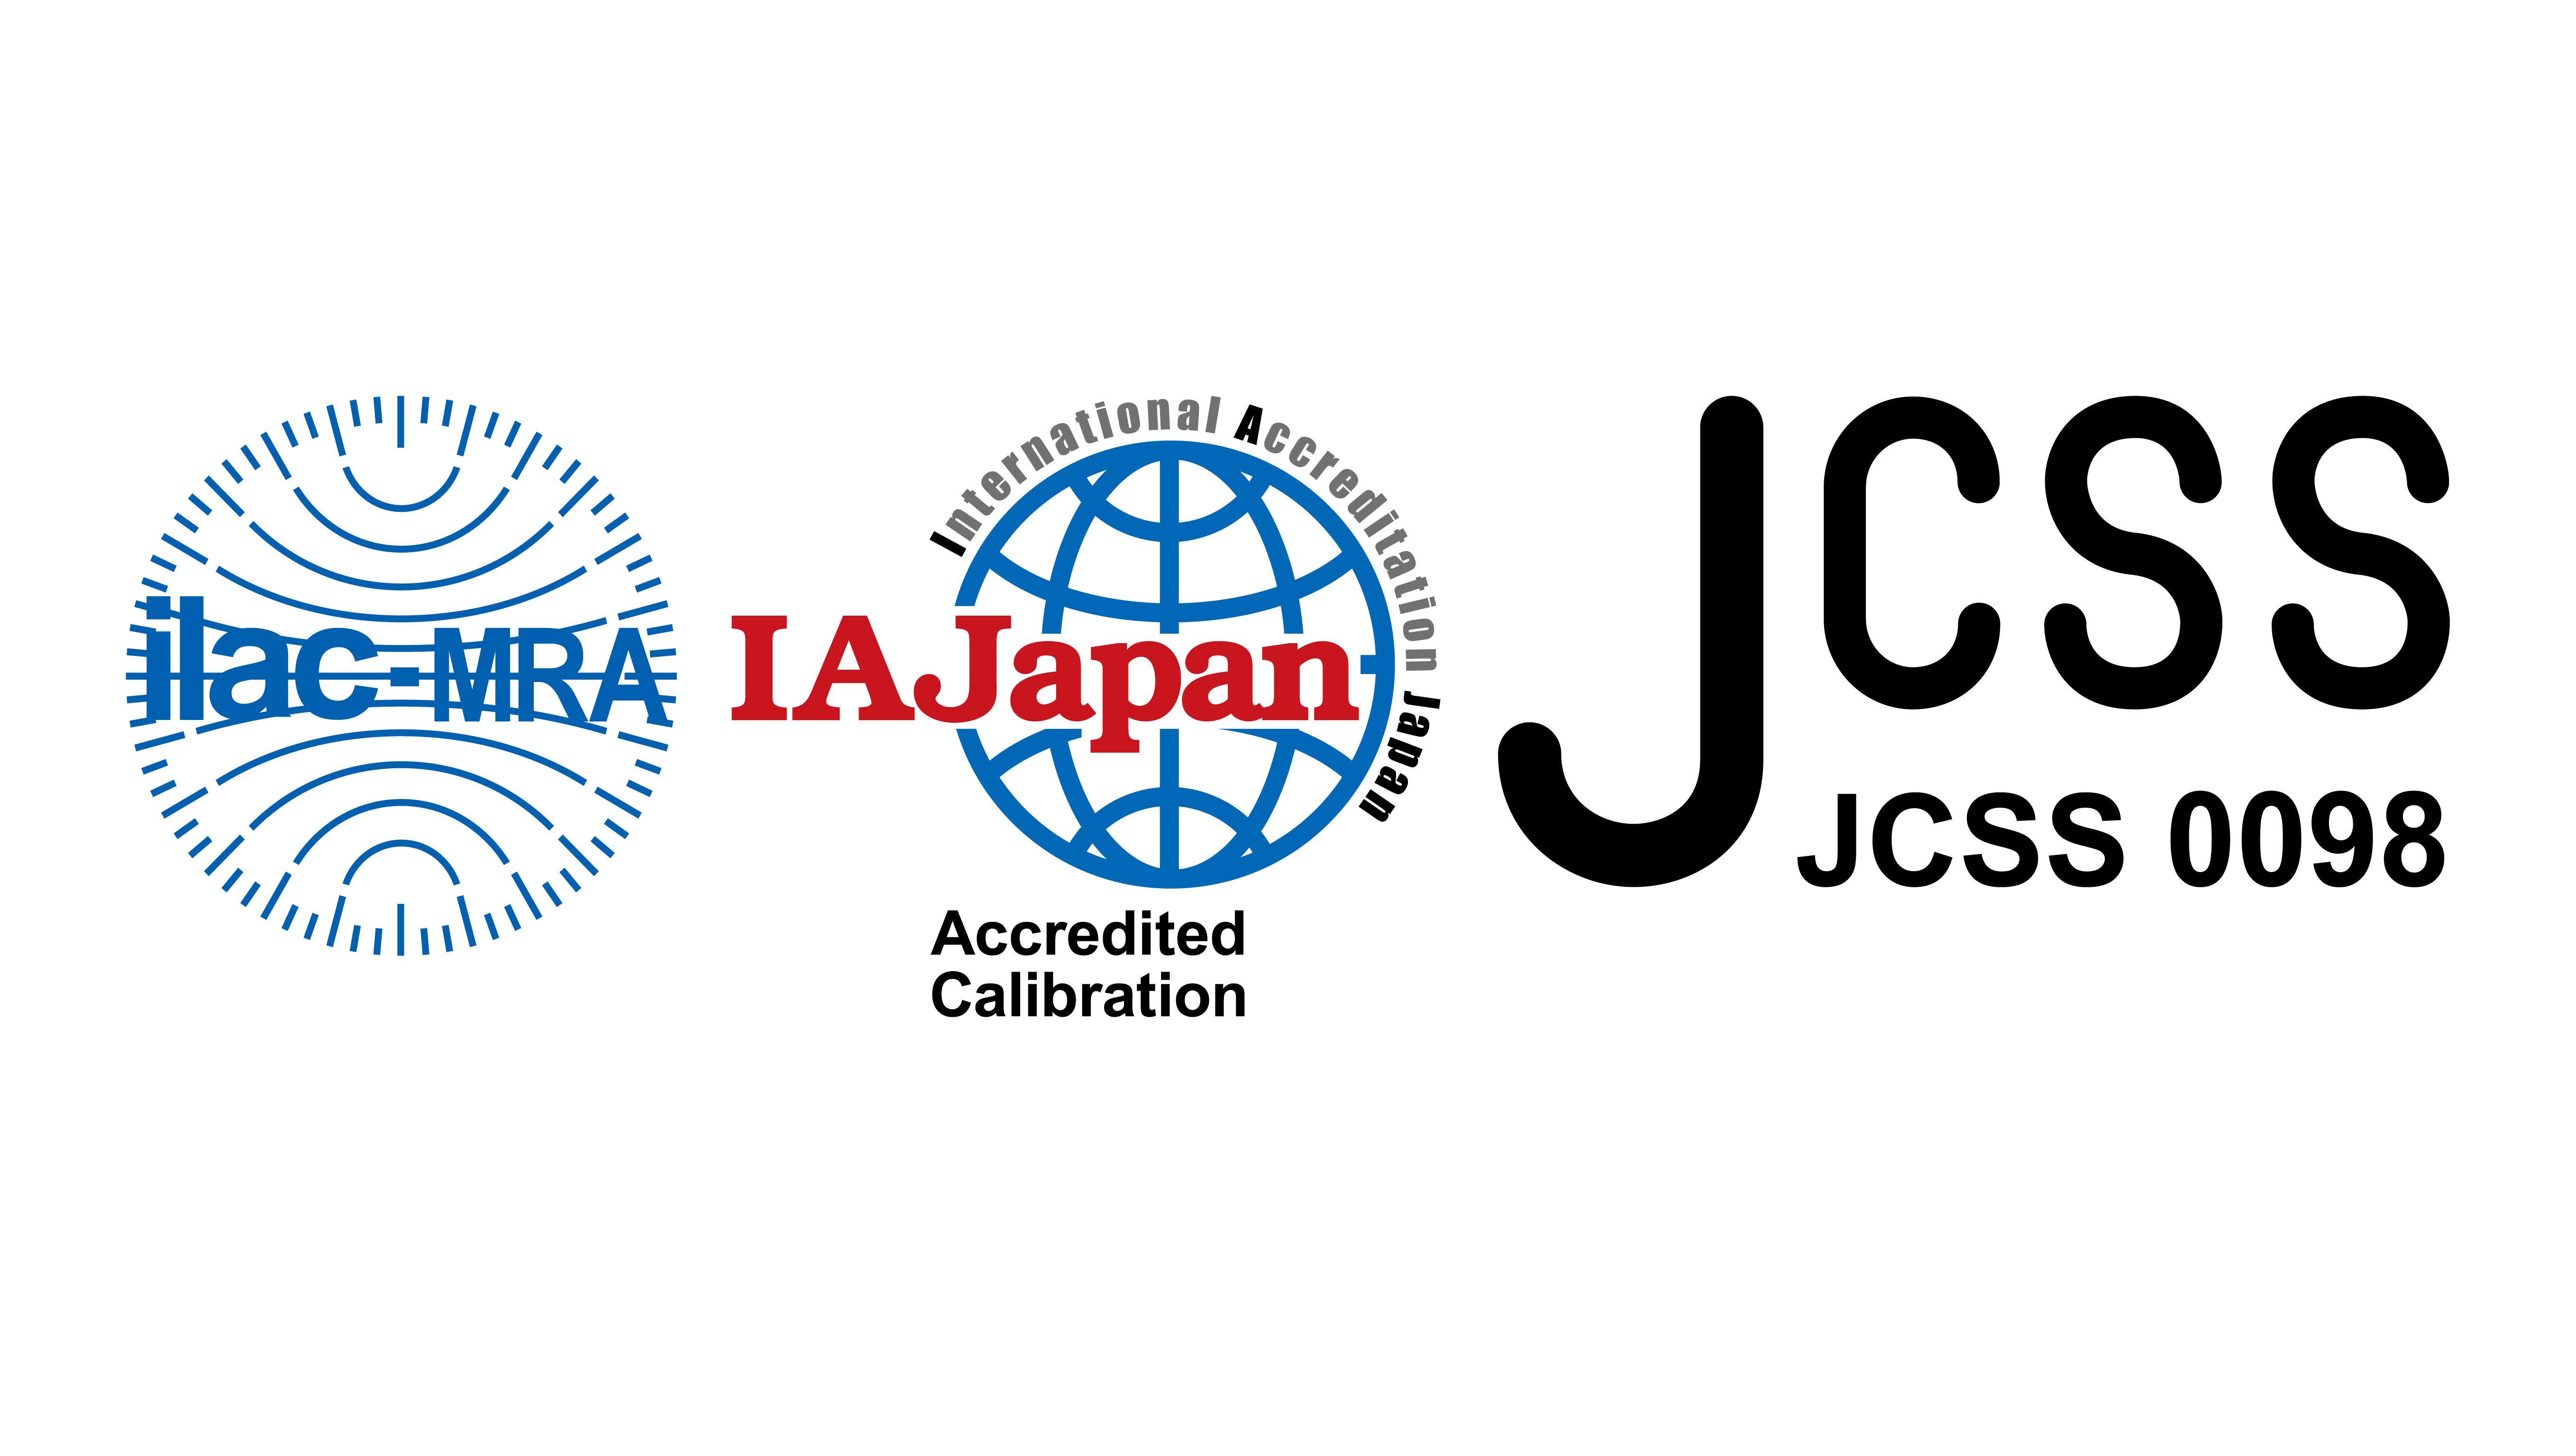 東亜計器製作所 小型 二重管標準温度計 No3 メーカーJCSS校正証明書付 JC-1143